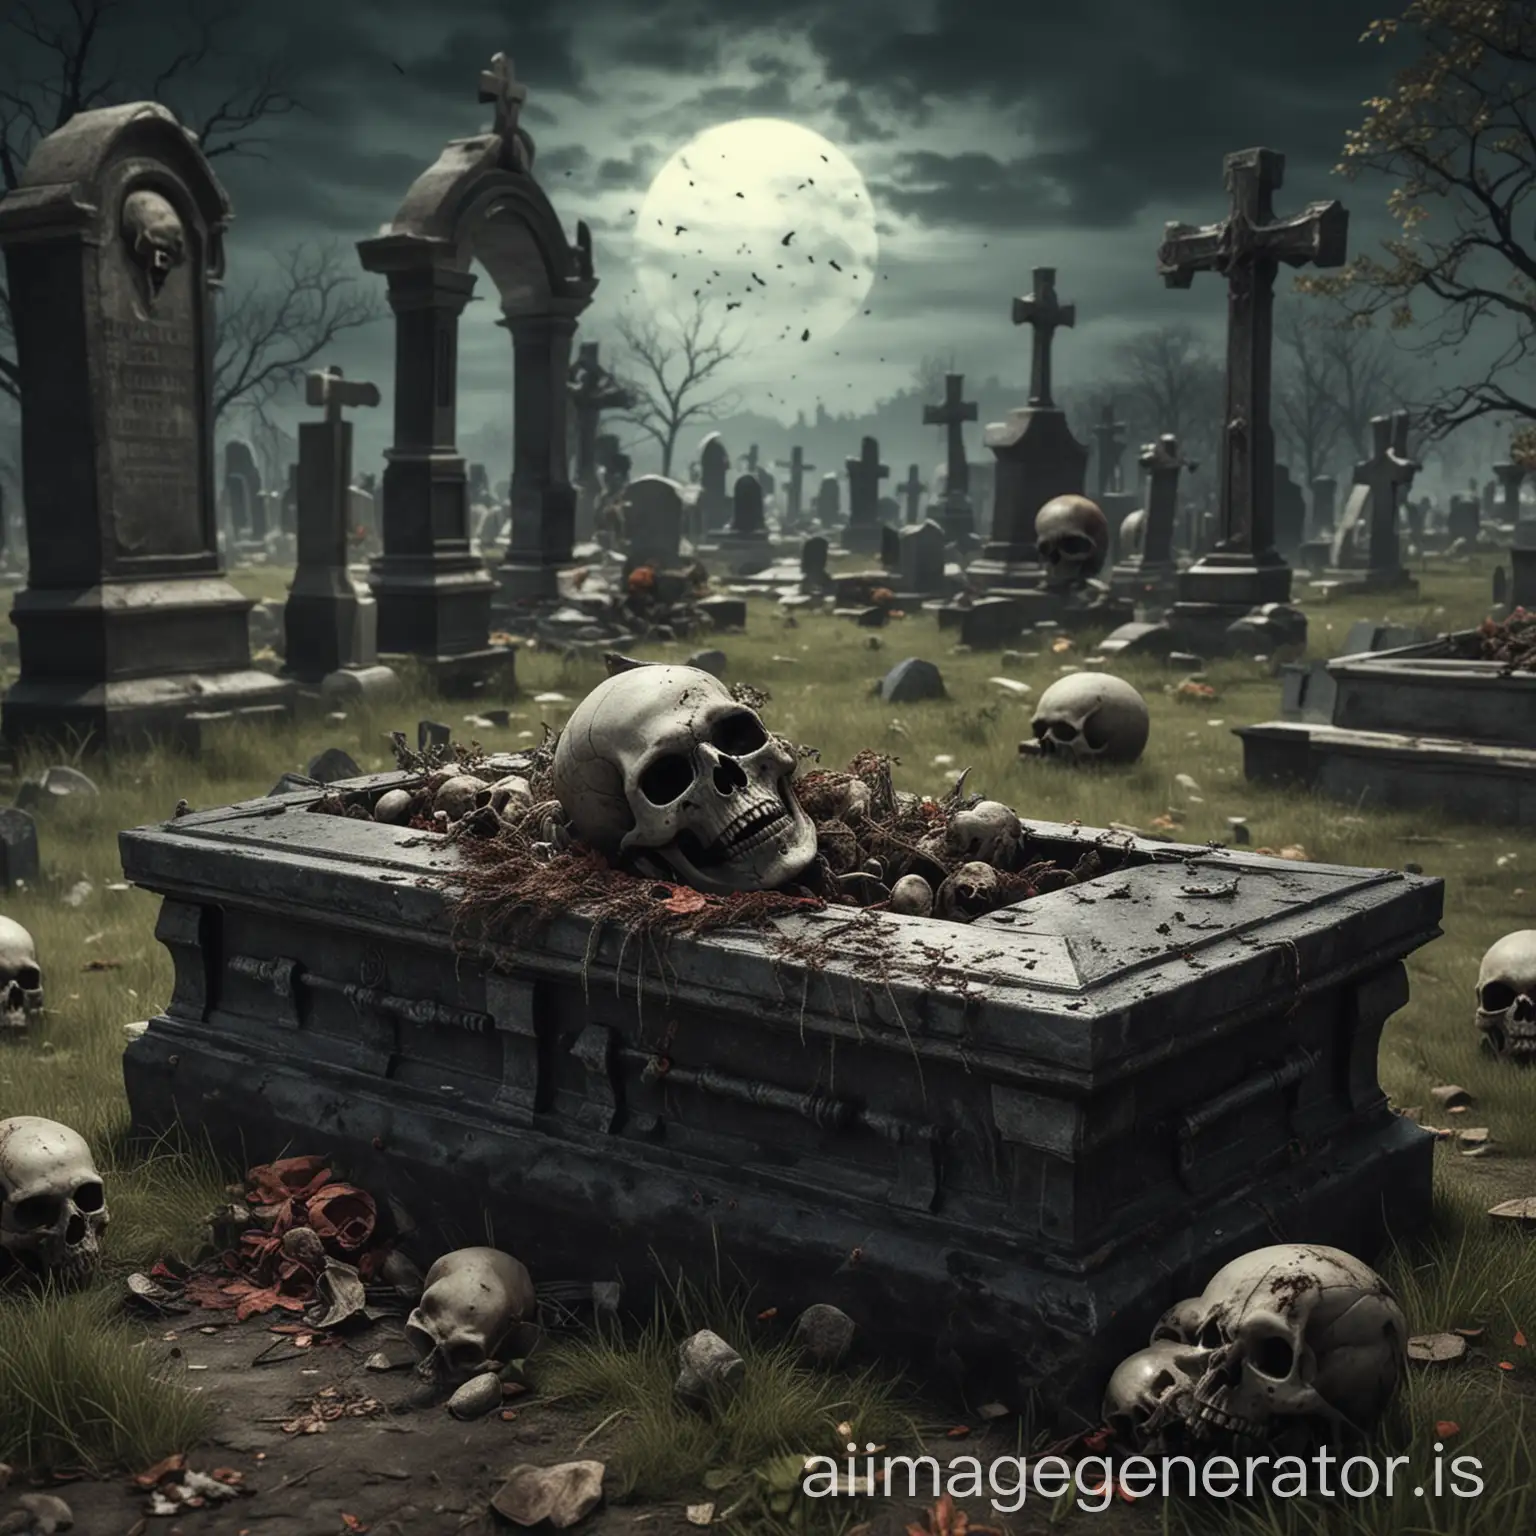 请生成一张埋骨之地场景图，图中要包含棺材、骷髅、僵尸元素